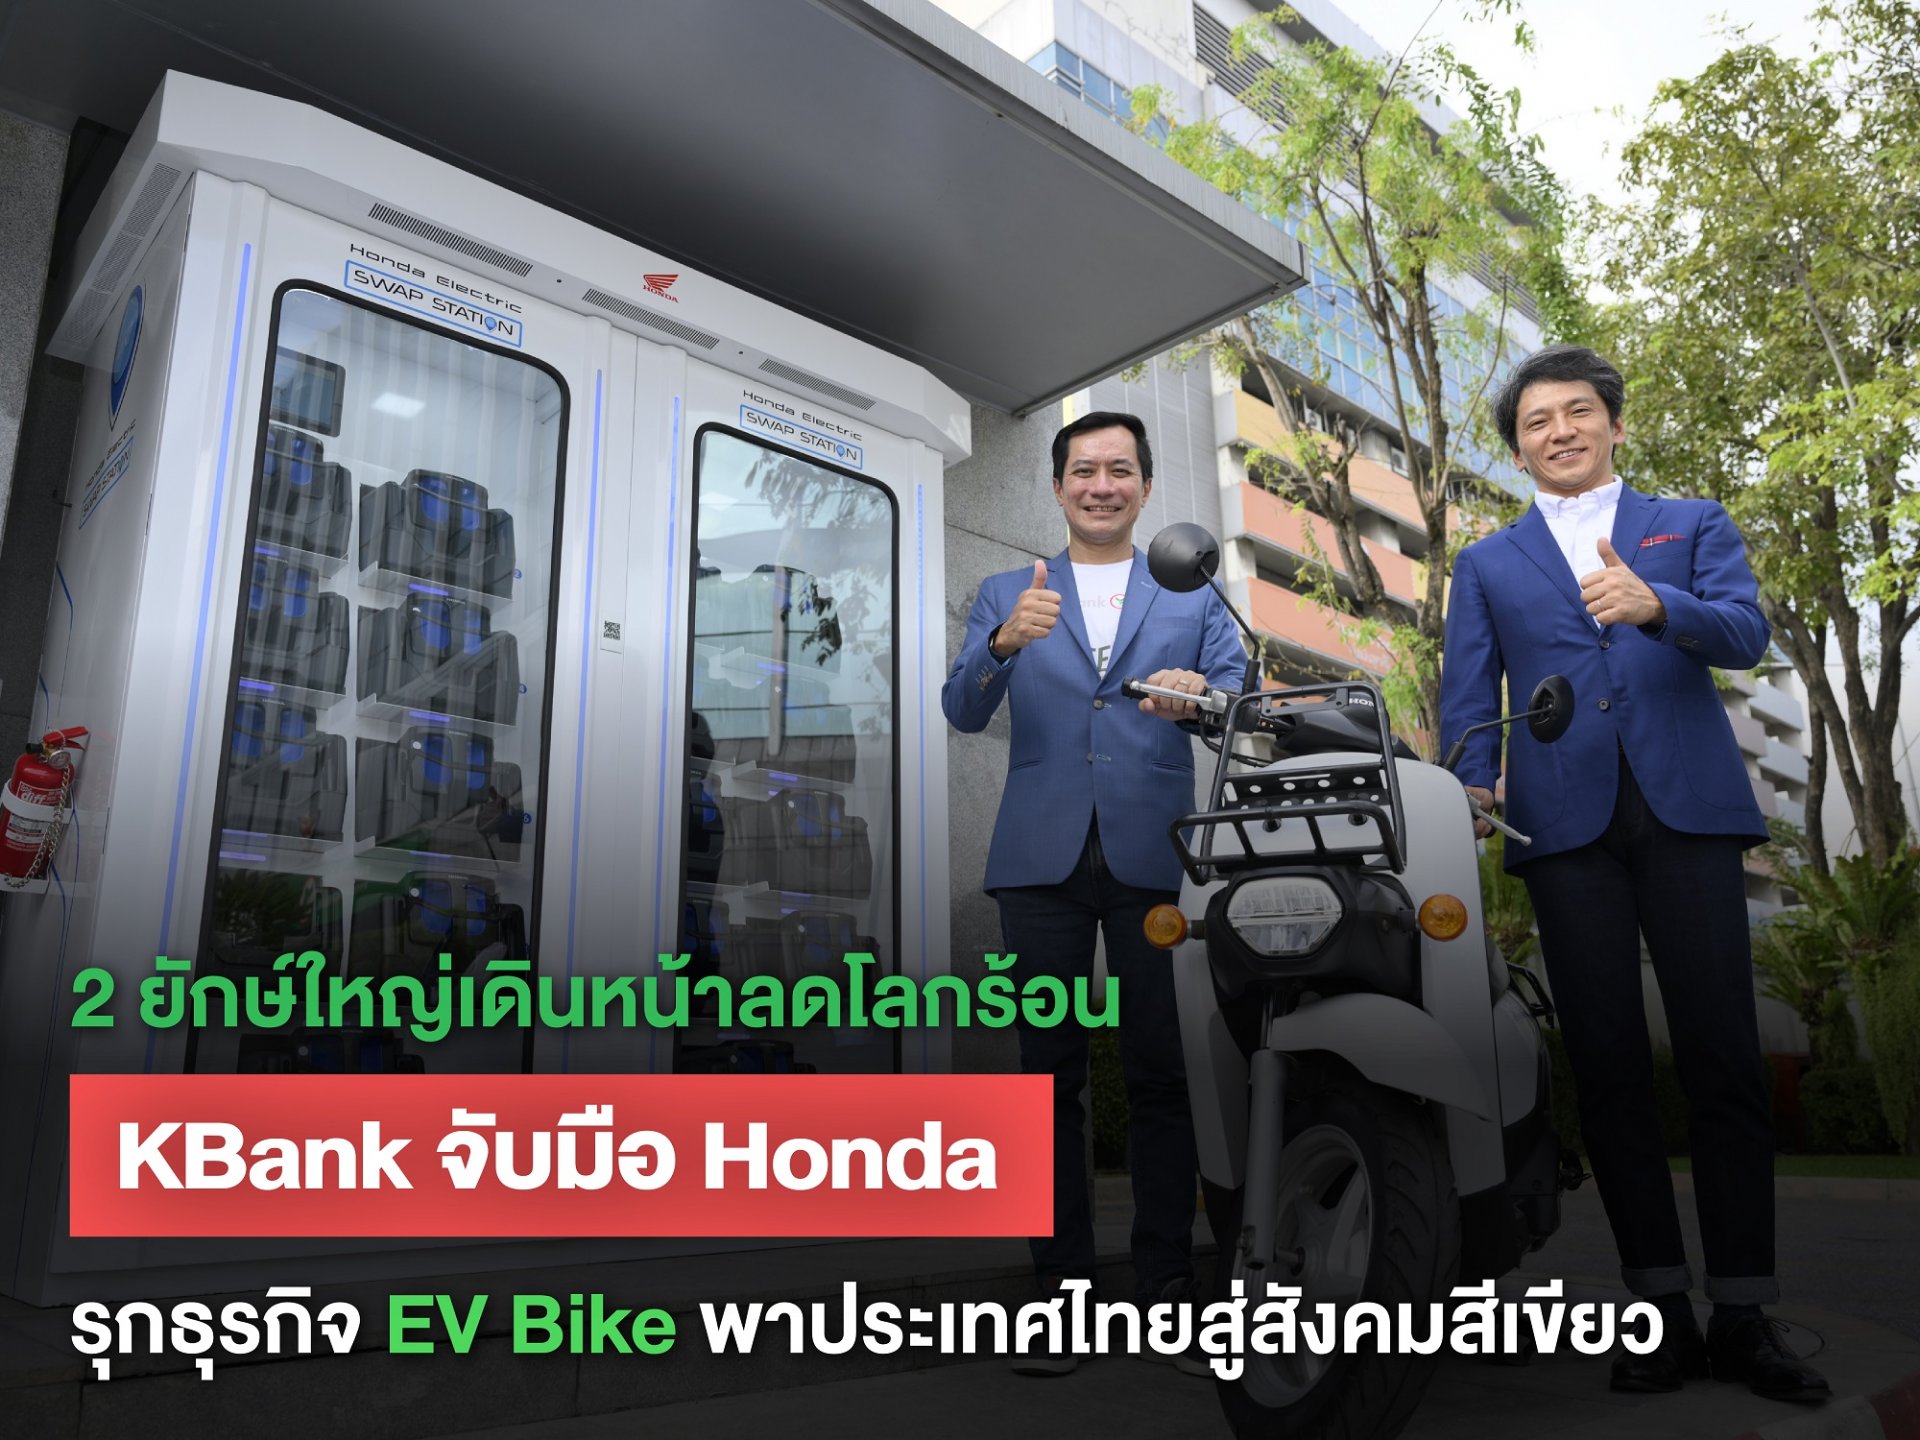 ไทยฮอนด้า จับมือ กสิกรไทย นำร่องติดตั้งสถานีสับเปลี่ยนแบตเตอรี่ฮอนด้า 3 สาขา กระตุ้นกระแสนิยม EV Bike 